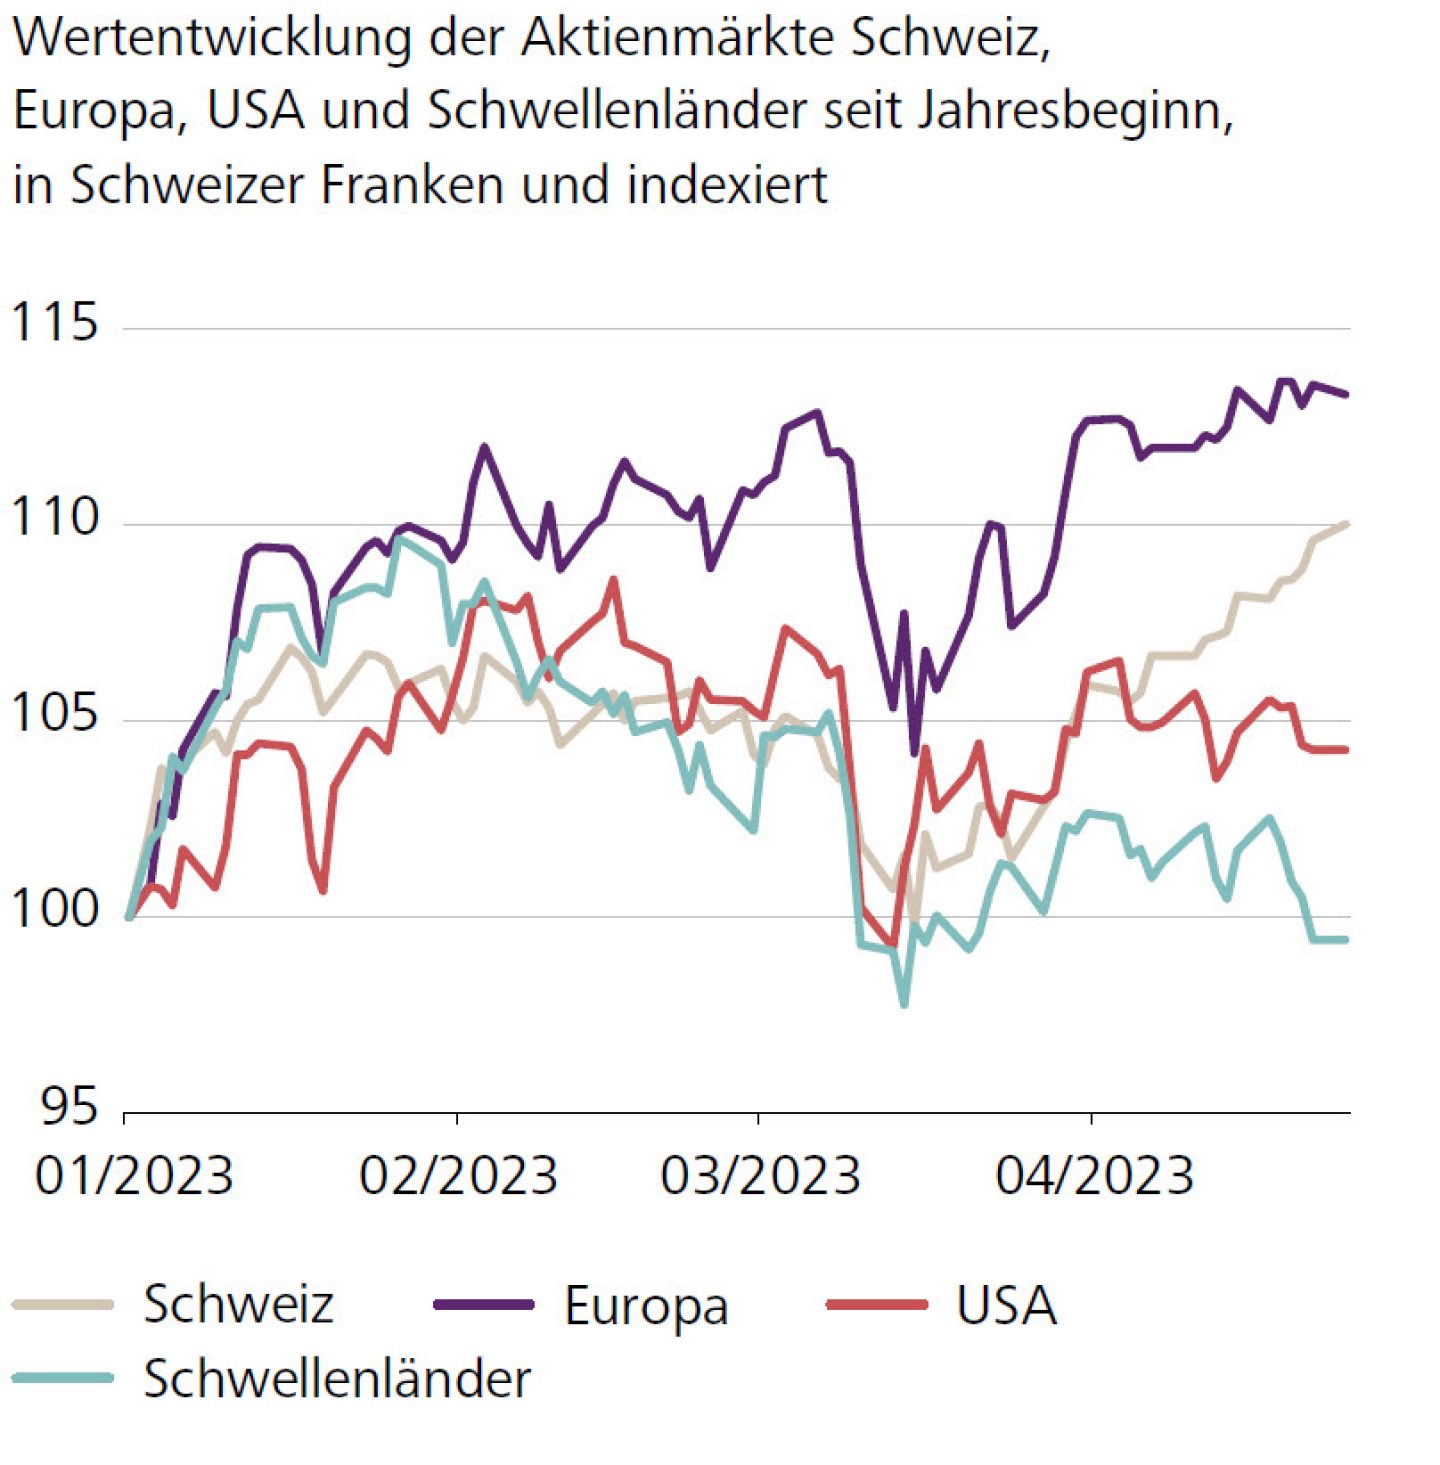 Wertentwicklung der Aktienmärkte Schweiz, Europa, USA und Schwellenländer seit Jahresbeginn, in Schweizer Franken und indexiert